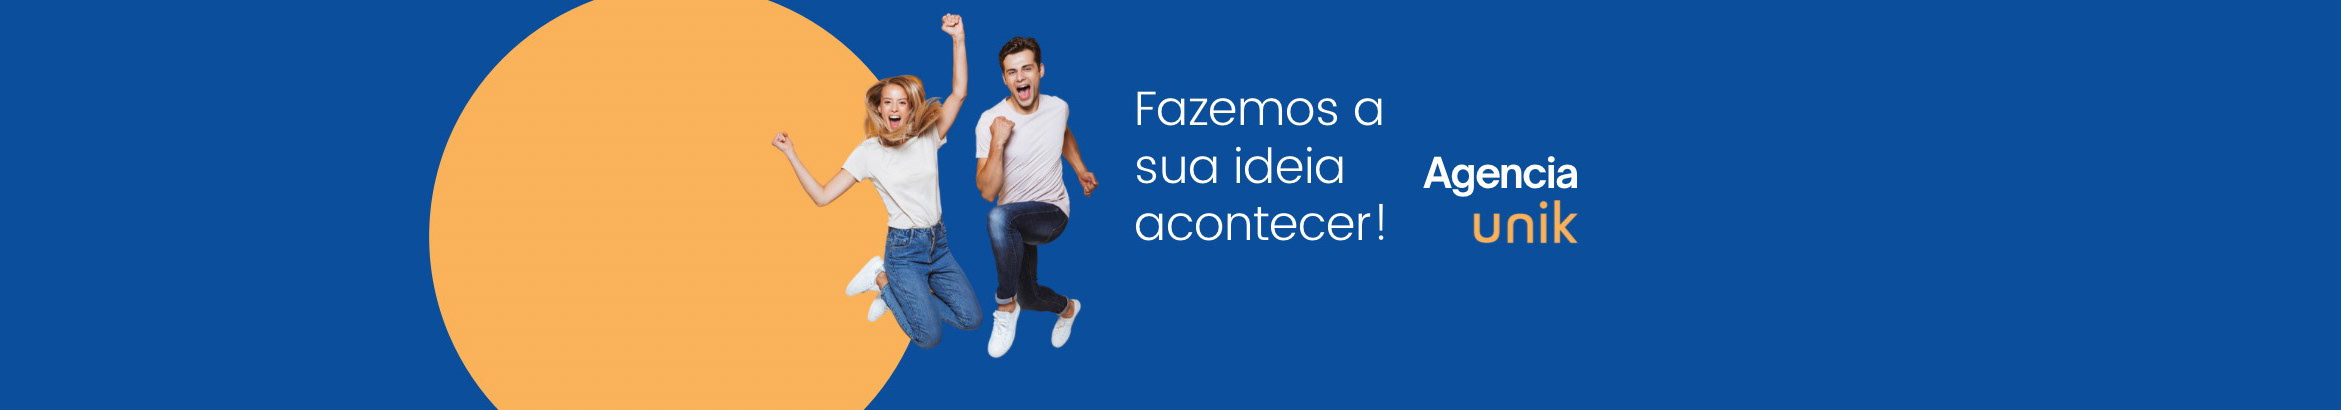 Agência Unik's profile banner